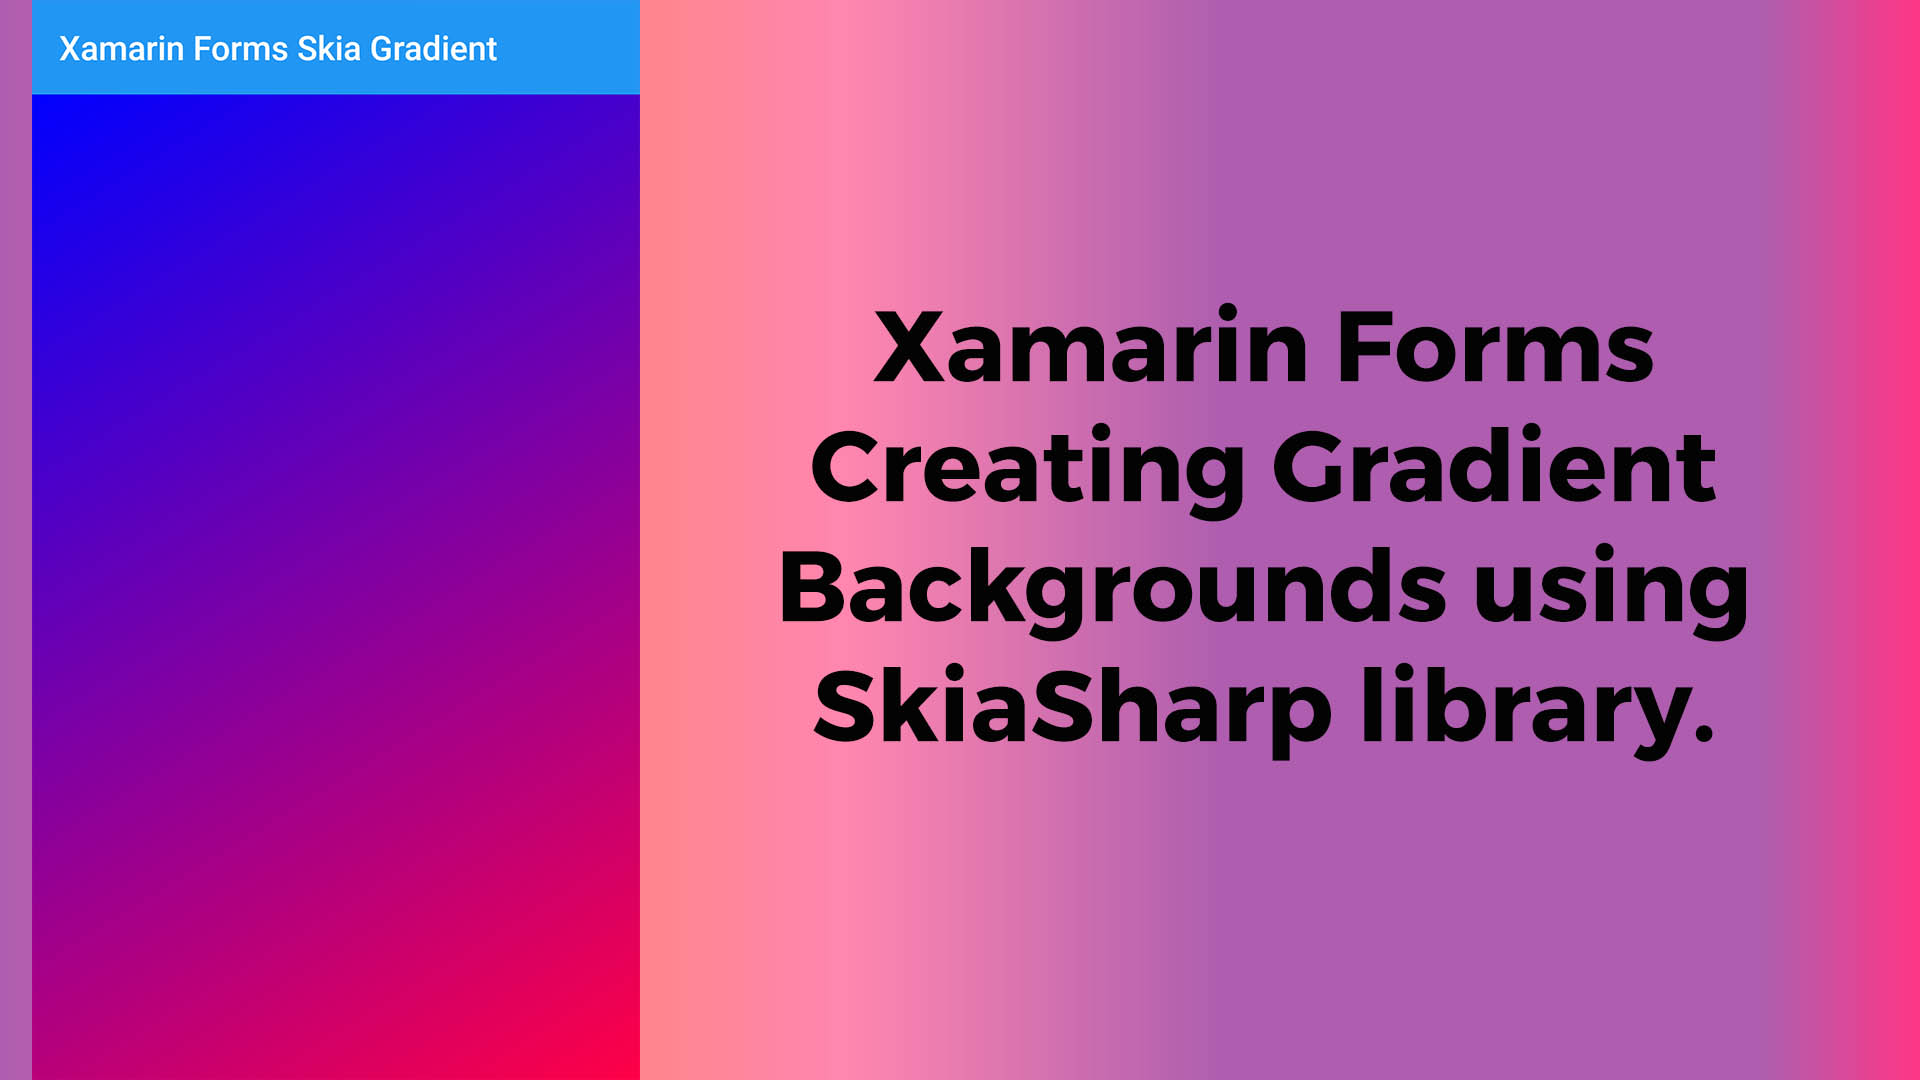 Xamarin Forms Skiasharp Gradient Backgrounds sẽ mang lại cho ứng dụng của bạn sự tươi mới và hấp dẫn hơn bao giờ hết. Không những mang lại hiệu ứng đẹp mắt, các hình nền này còn giúp cho việc tương tác của người dùng với ứng dụng trở nên đơn giản và thuận tiện hơn.